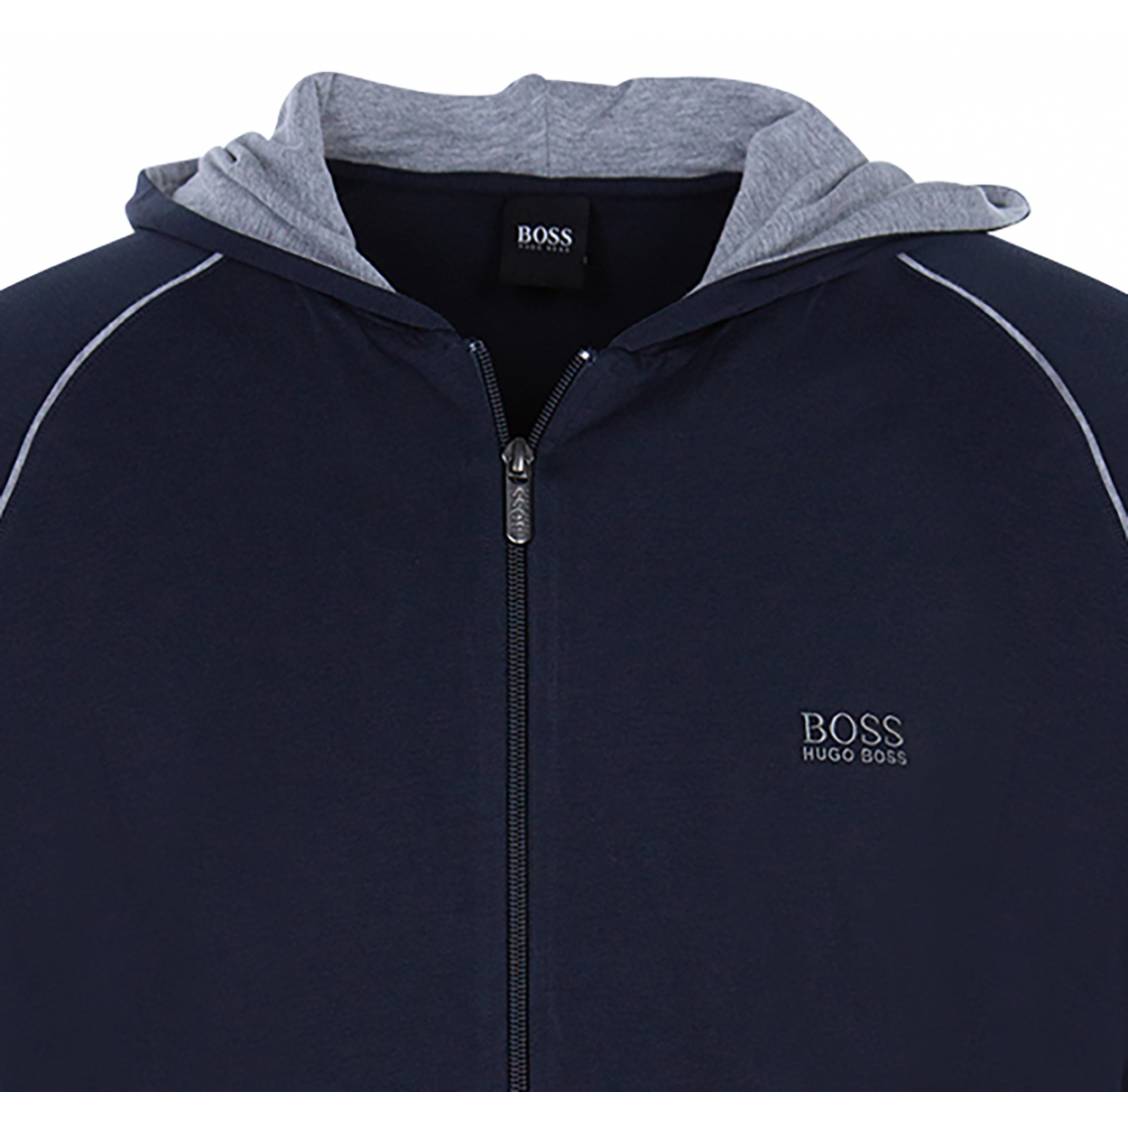 Visiter la boutique BOSSHugo Boss 50222682 Pull à capuche en coton épais pour homme Bleu marine Taille XXL 